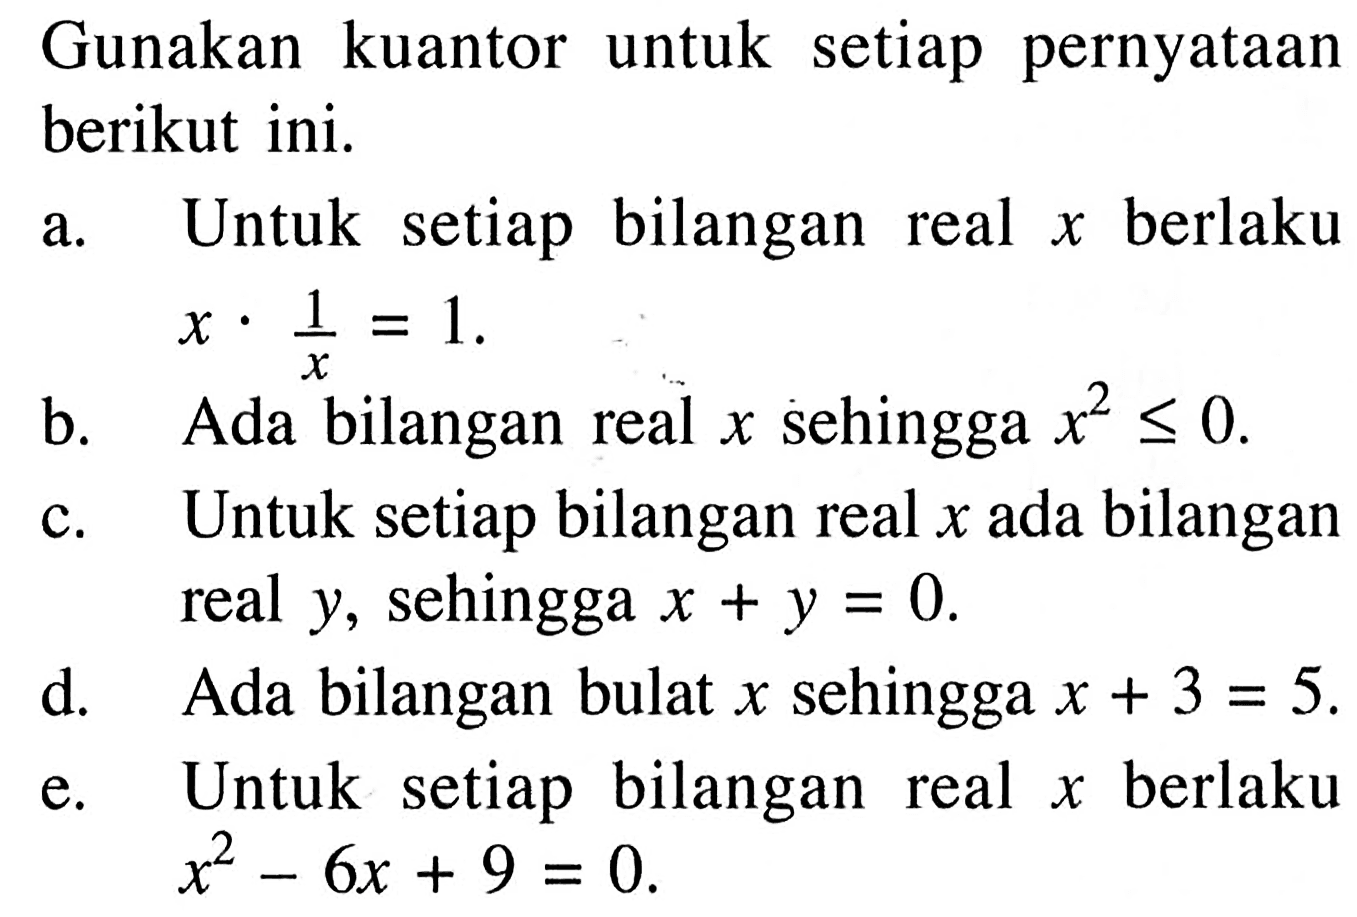 Gunakan kuantor untuk setiap pernyataan berikut ini. a. Untuk setiap bilangan real x berlaku x.1/x = 1. b. Ada bilangan real x sehingga x^2 <= 0. c. Untuk setiap bilangan real x ada bilangan real y, sehingga x+y=0. d. Ada bilangan bulat x sehingga x+3=5. e. Untuk setiap bilangan real x berlaku x^2-6x+9=0. 